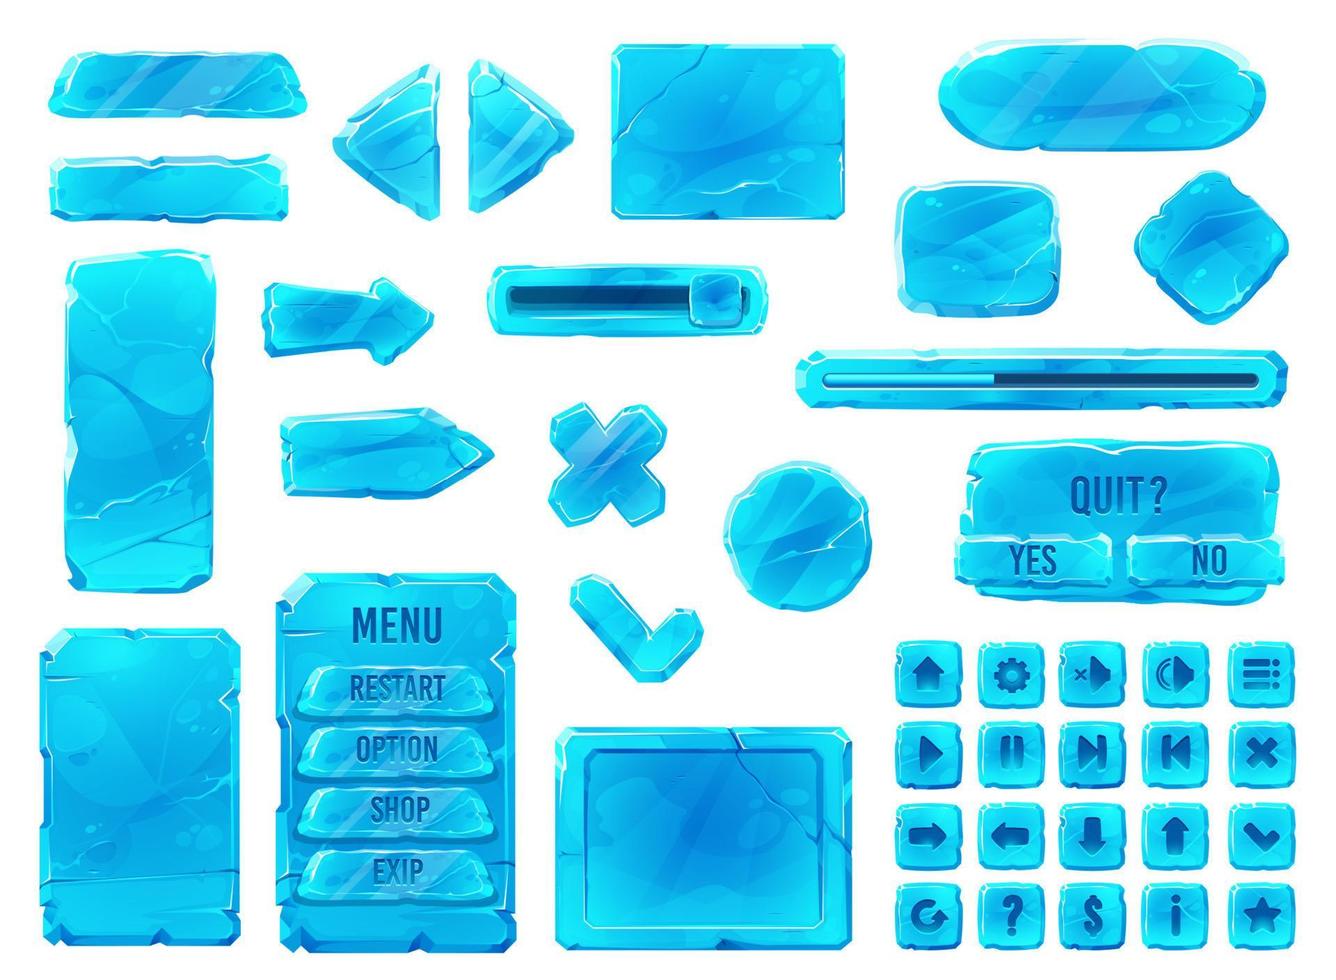 ghiaccio cristallo pulsanti, cartone animato interfaccia gioco ui gui vettore